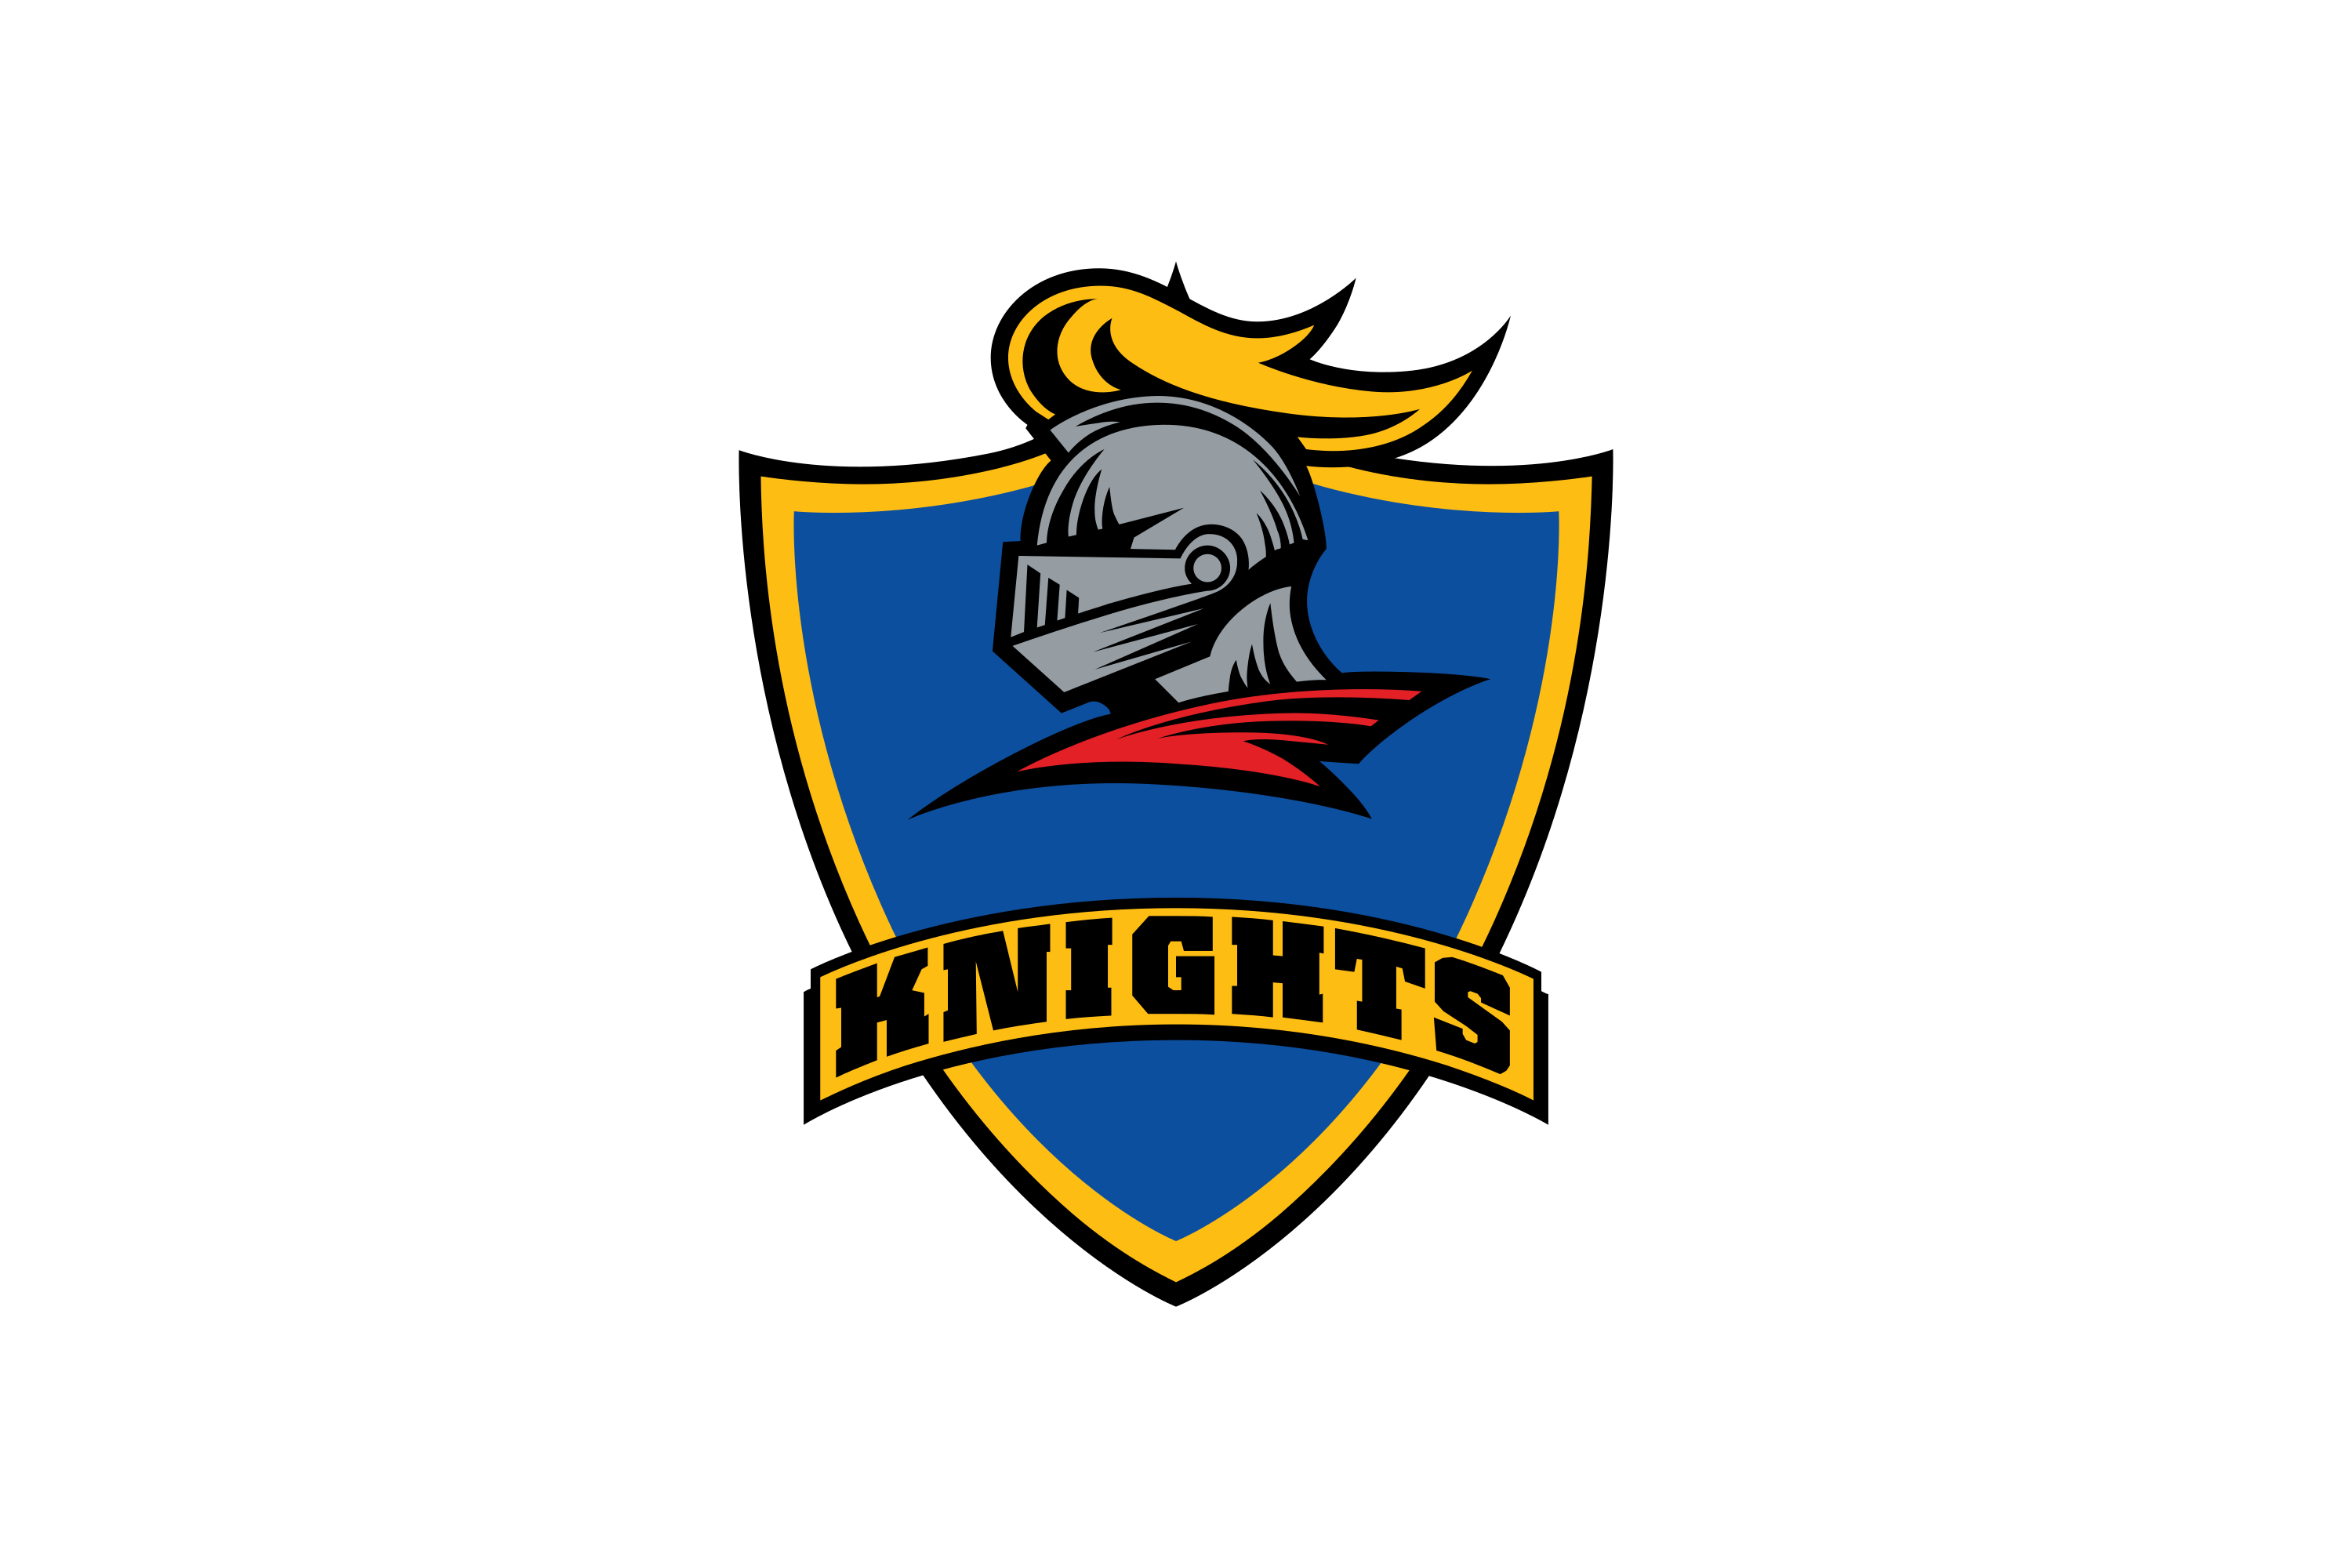 Knights Cricket Team Logo